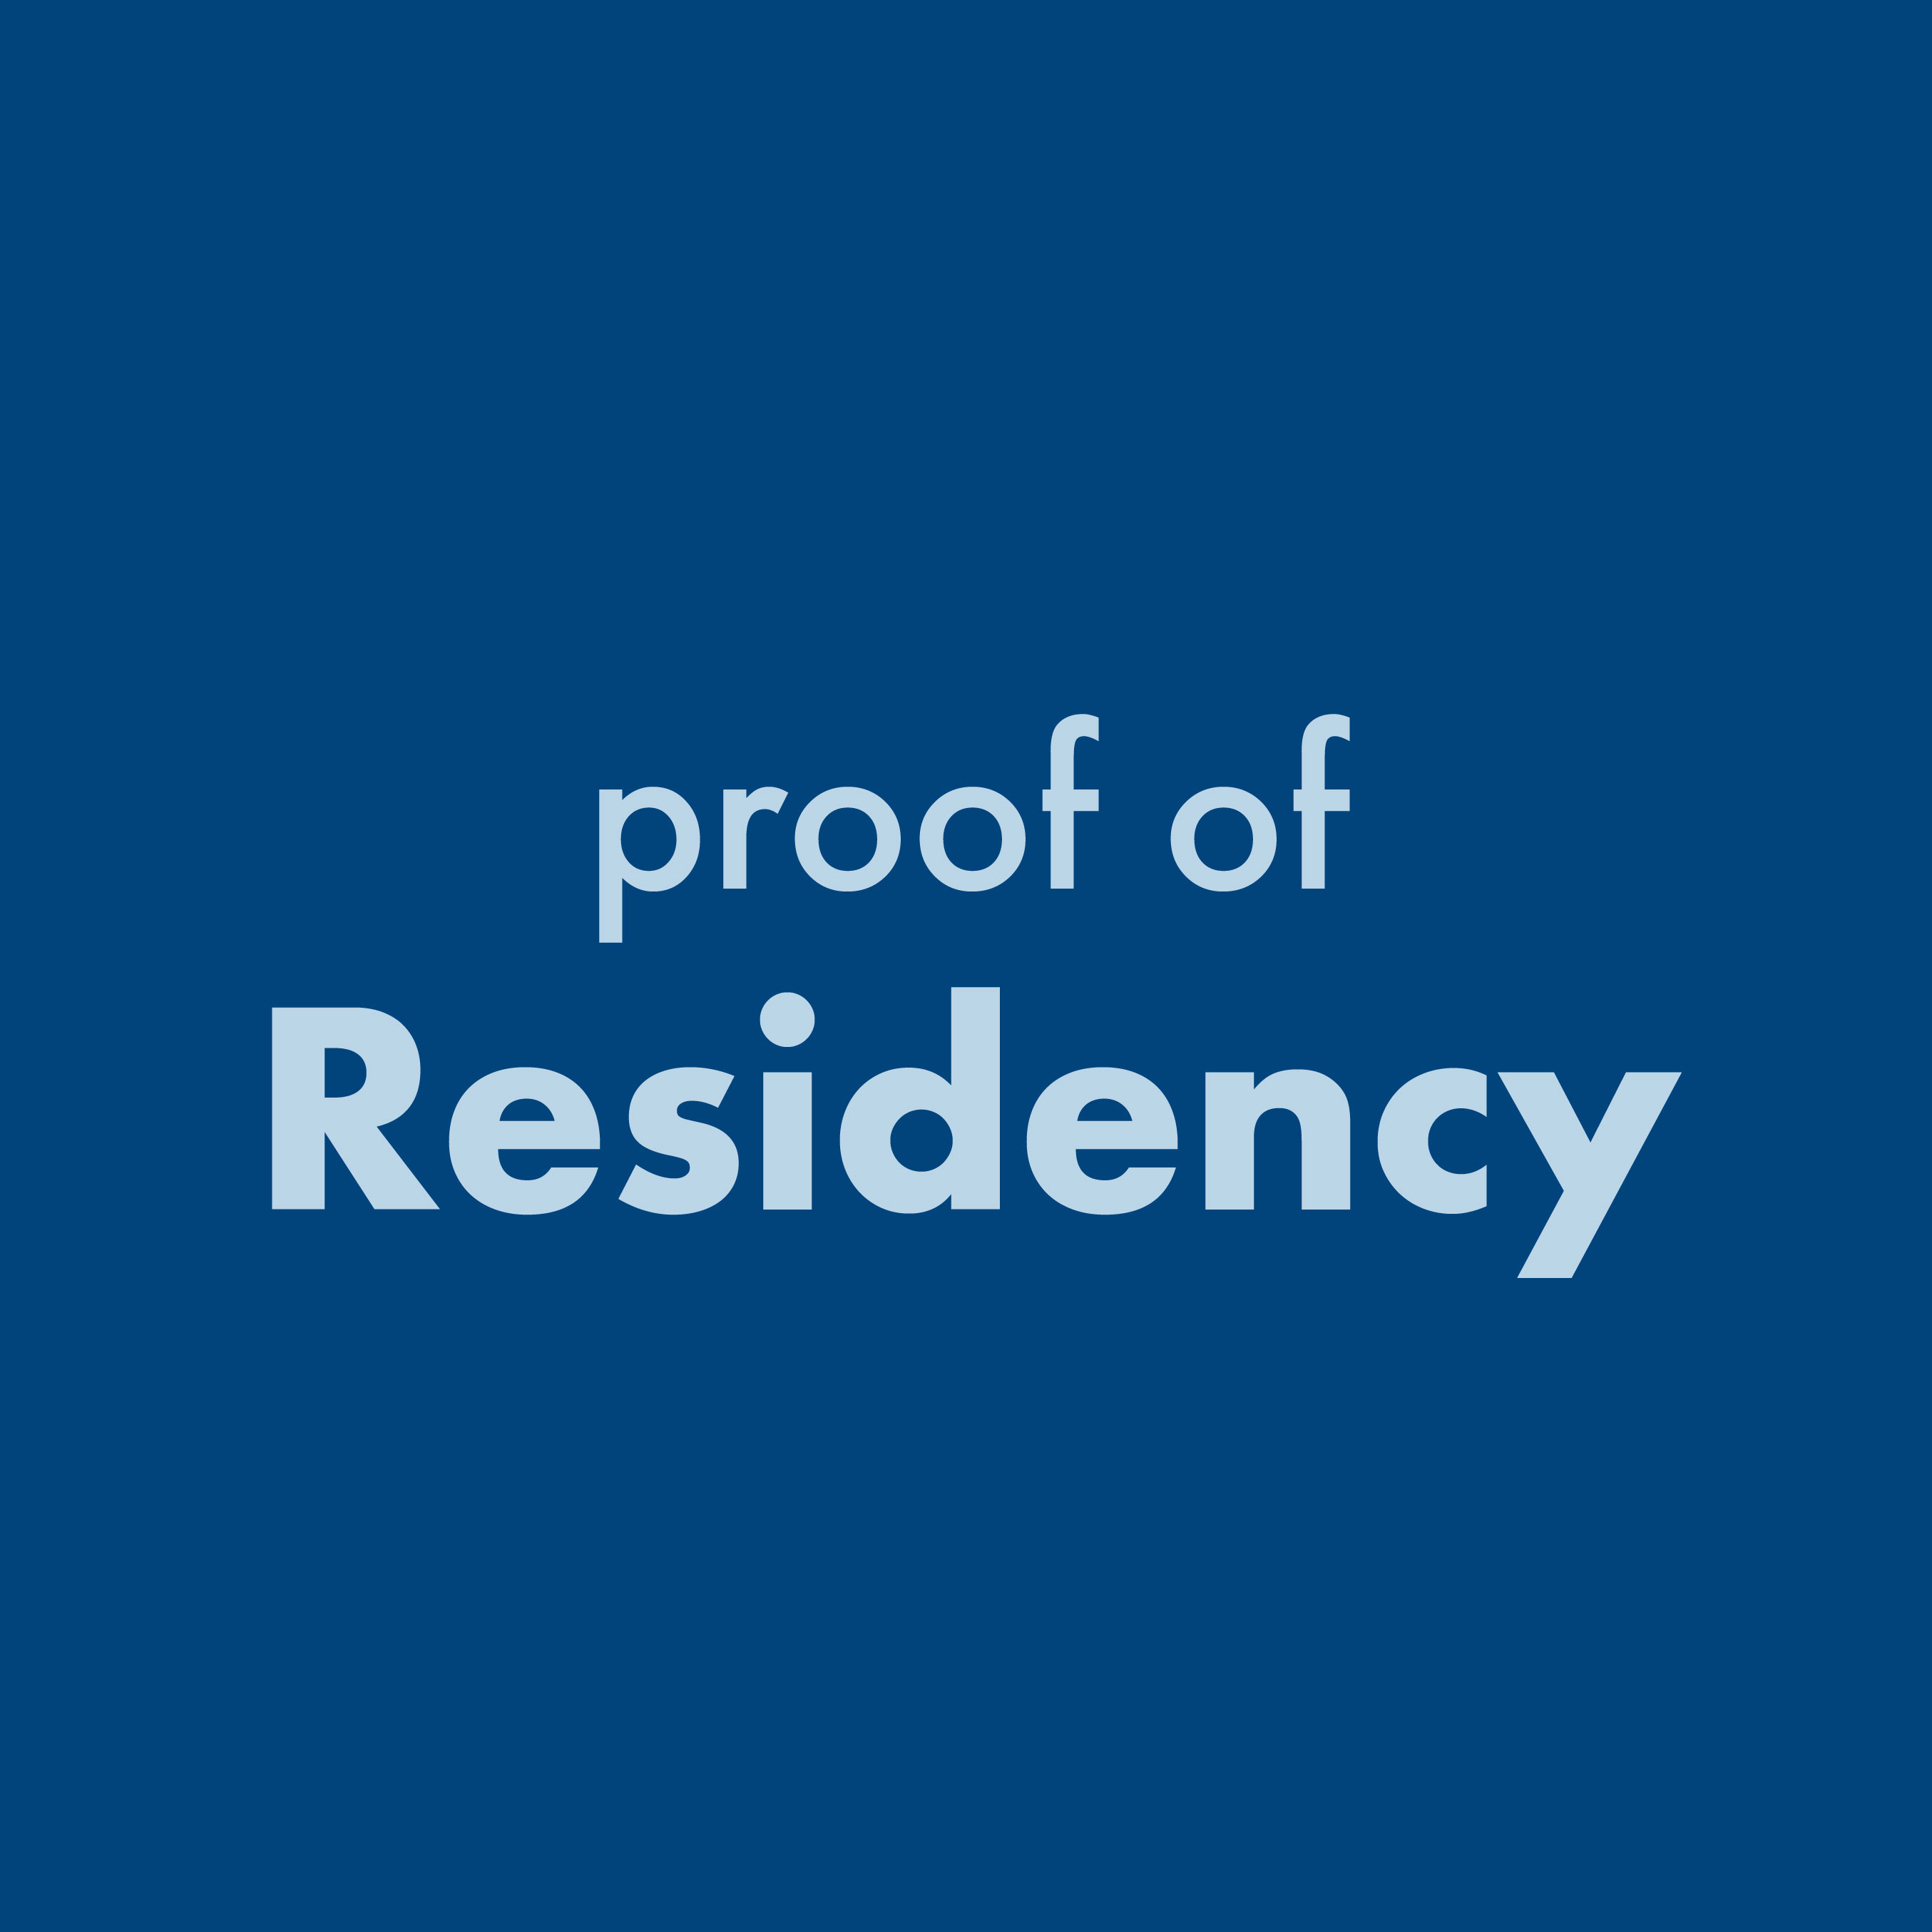 Proof of residency